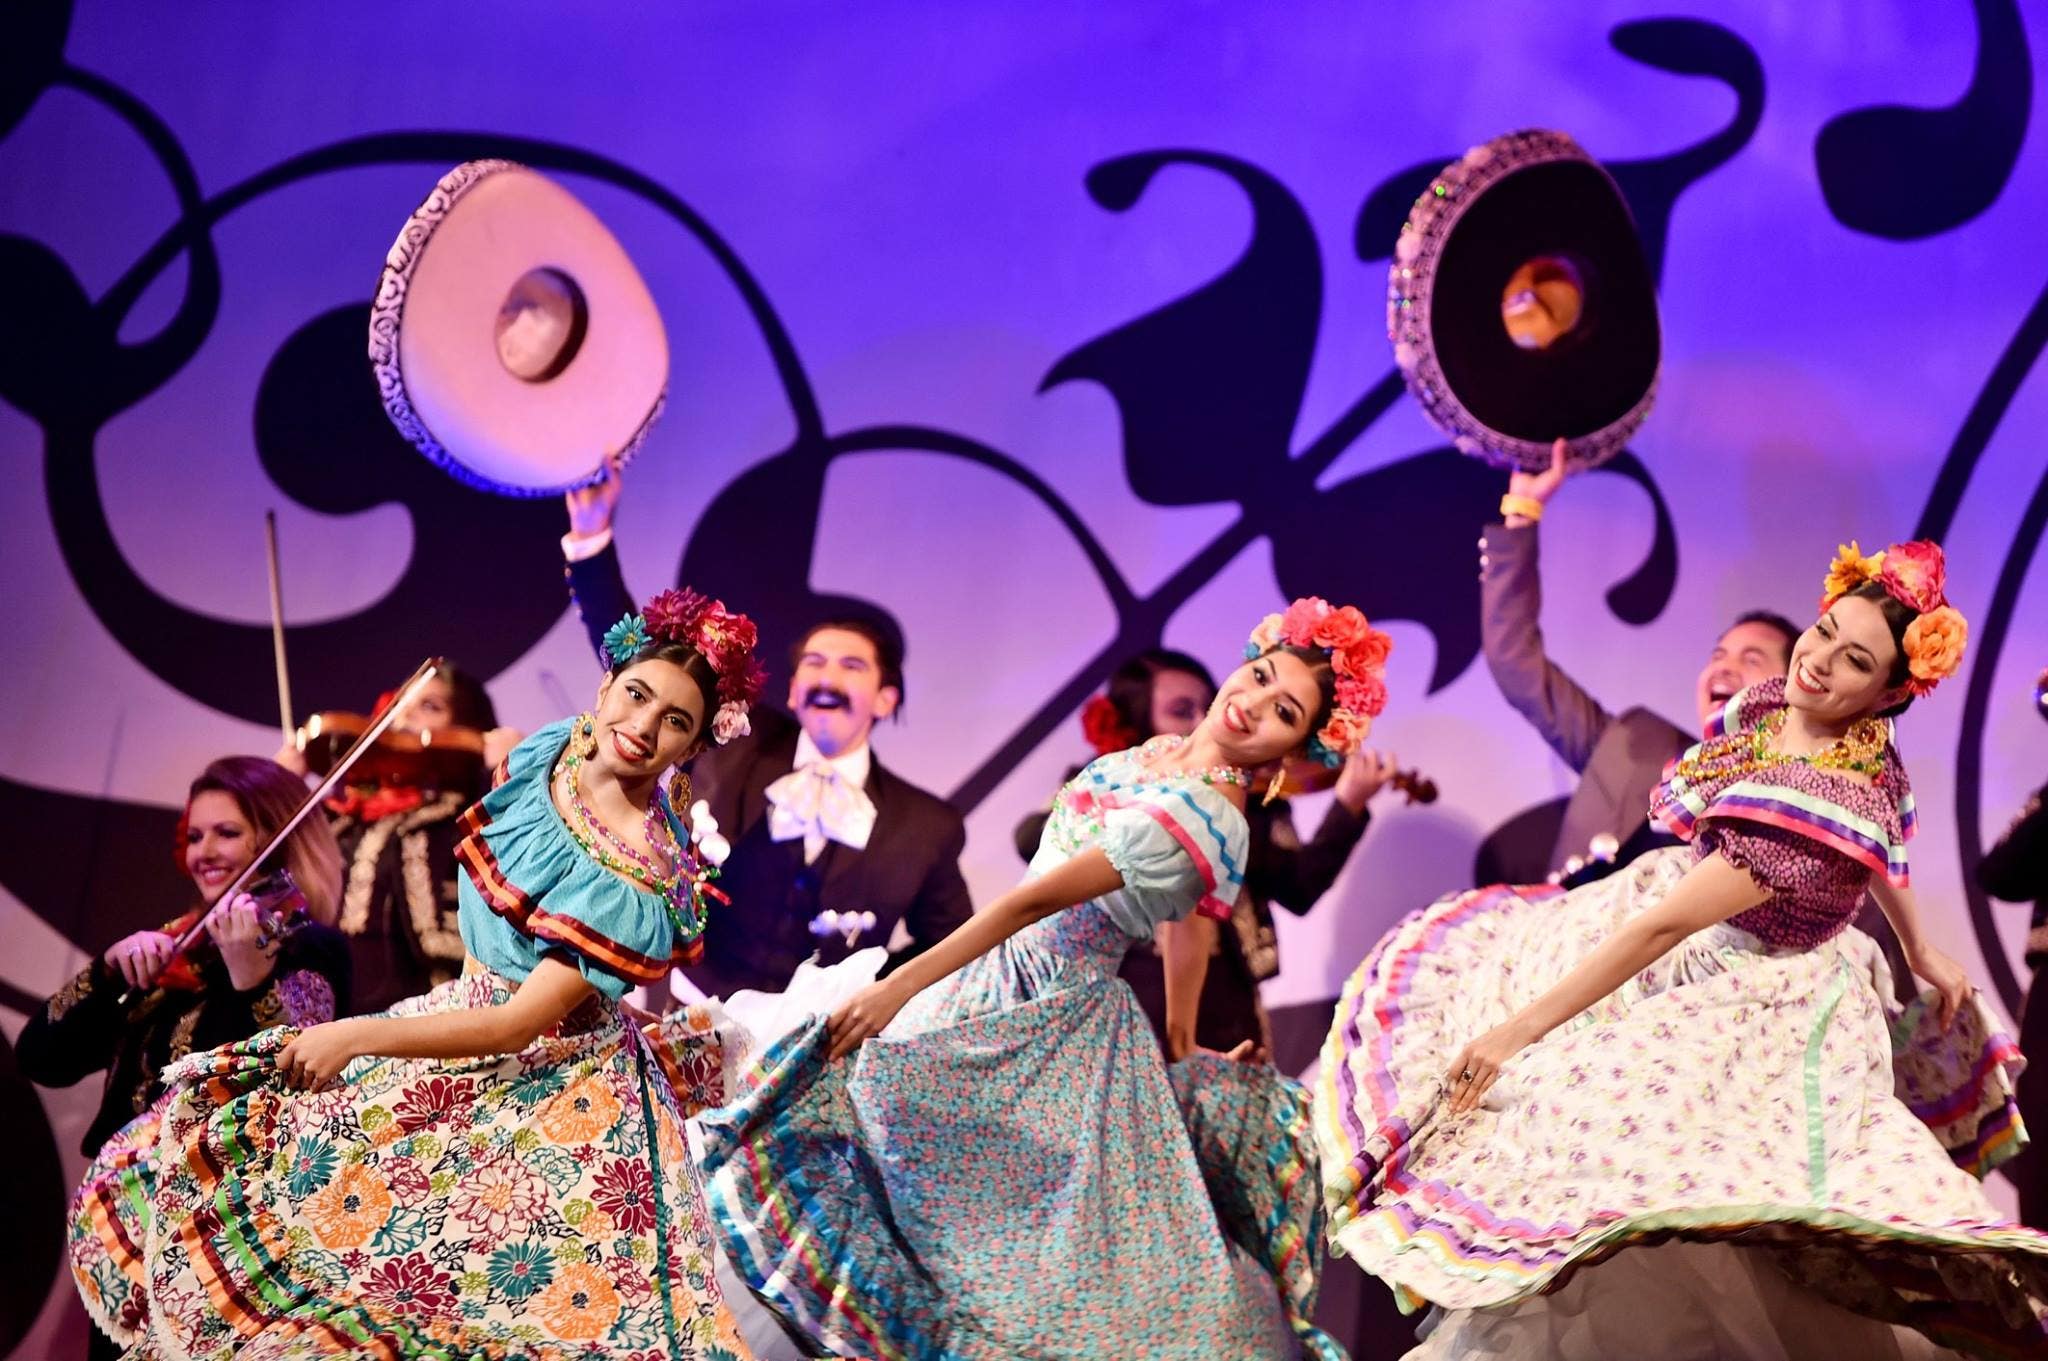 Dancers at the U.S. premiere of "Coco" at El Capitan Theatre